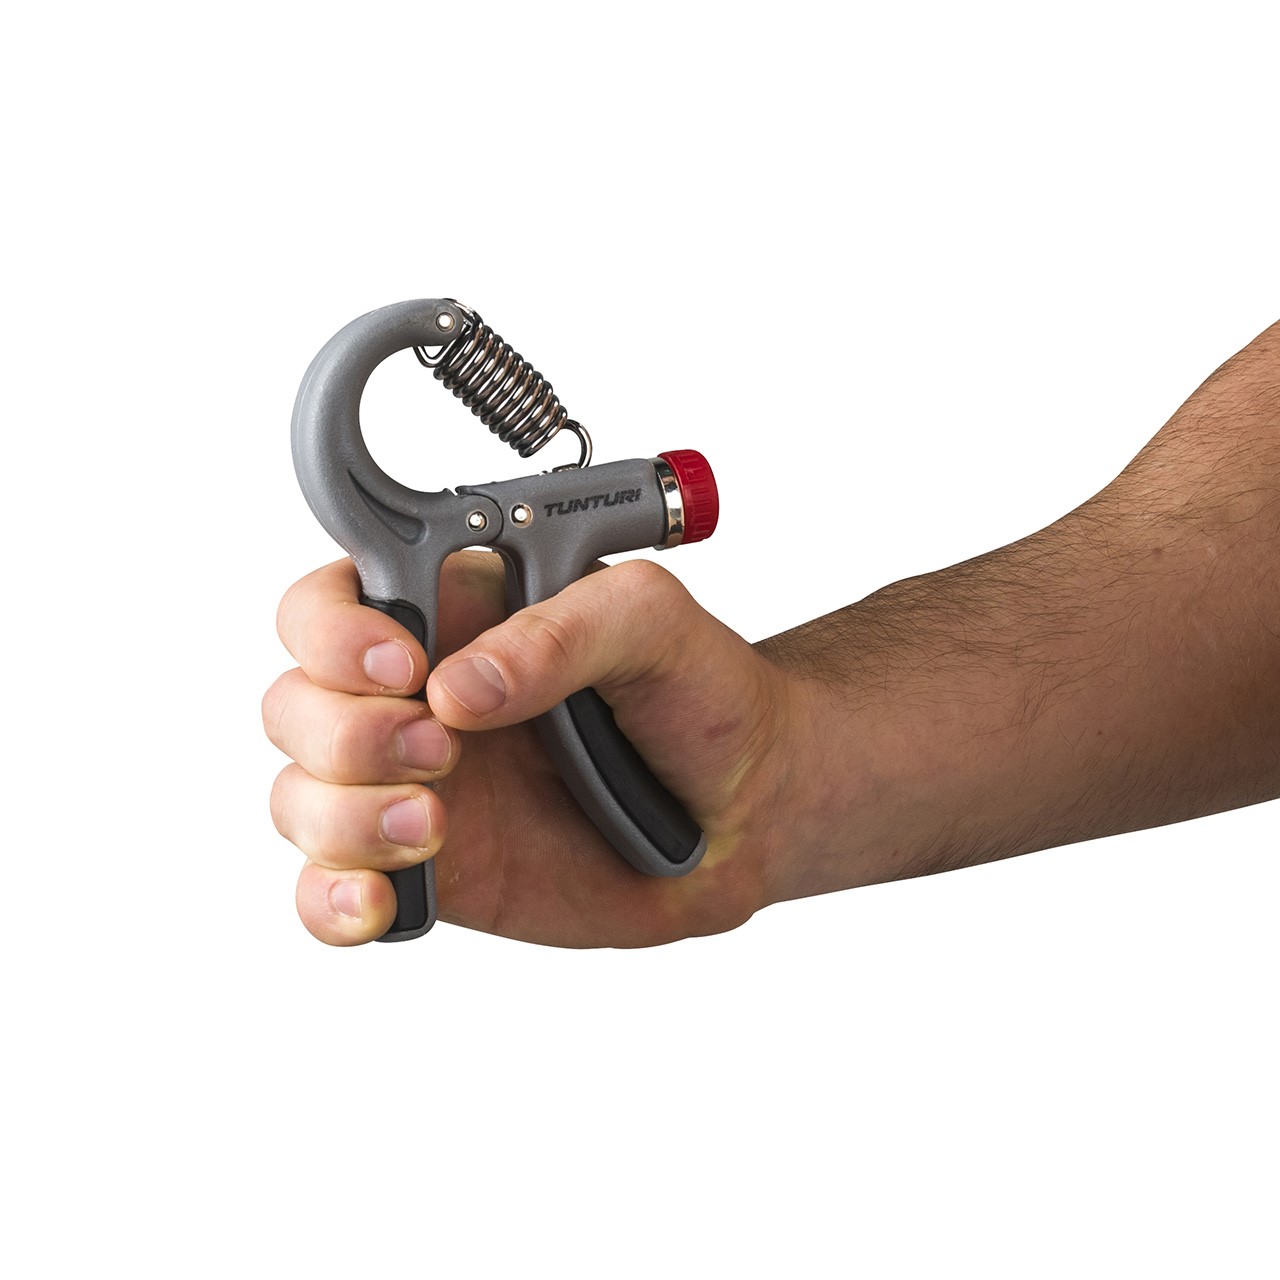 Adjustable Tunturi Handgrip Hand Trainer